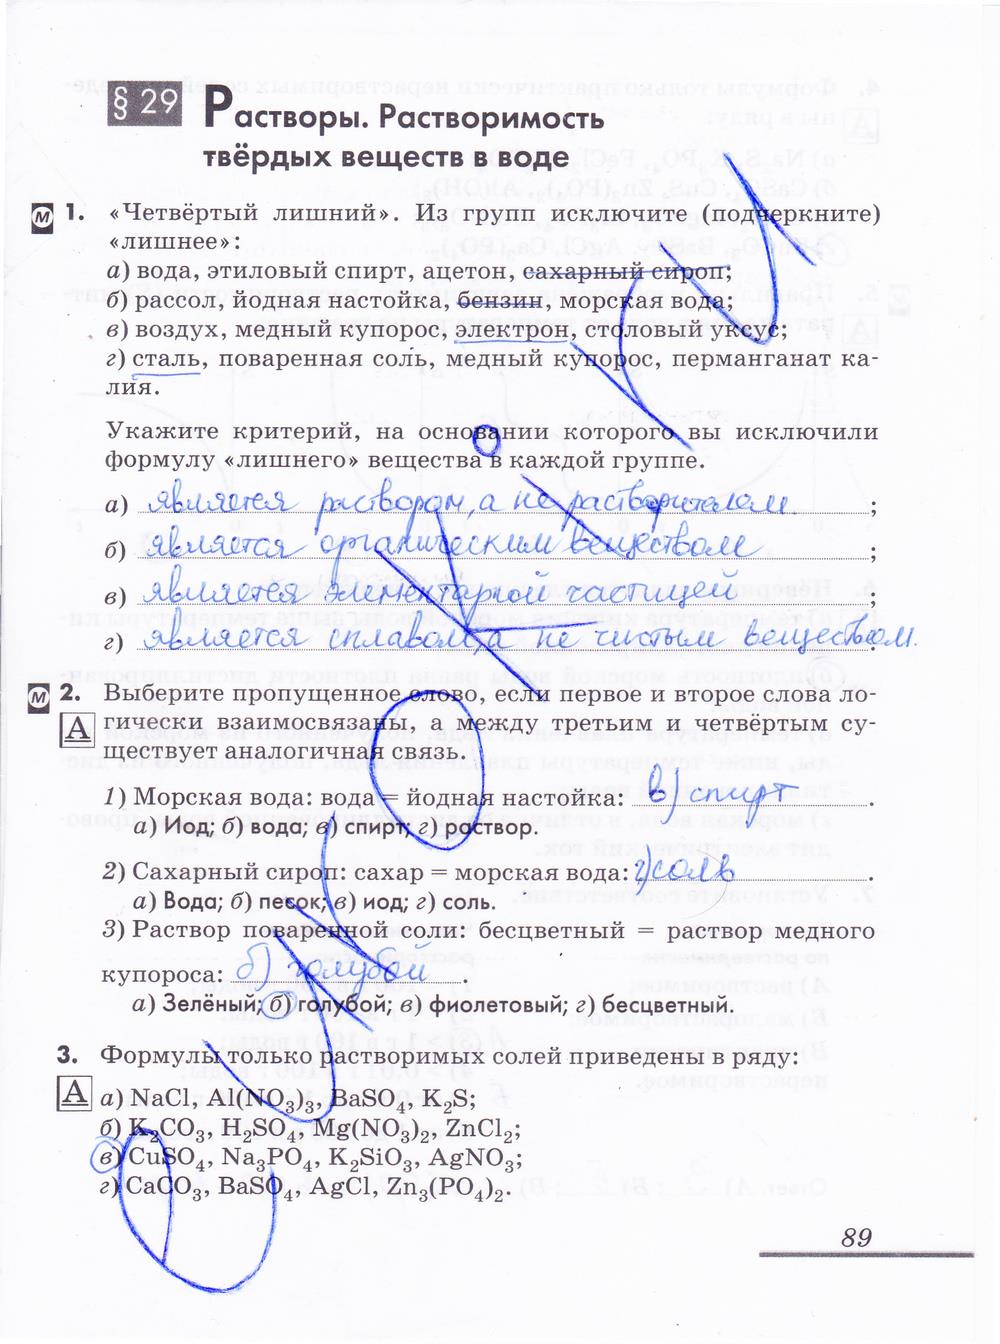 гдз 8 класс рабочая тетрадь страница 89 химия Еремин, Дроздов